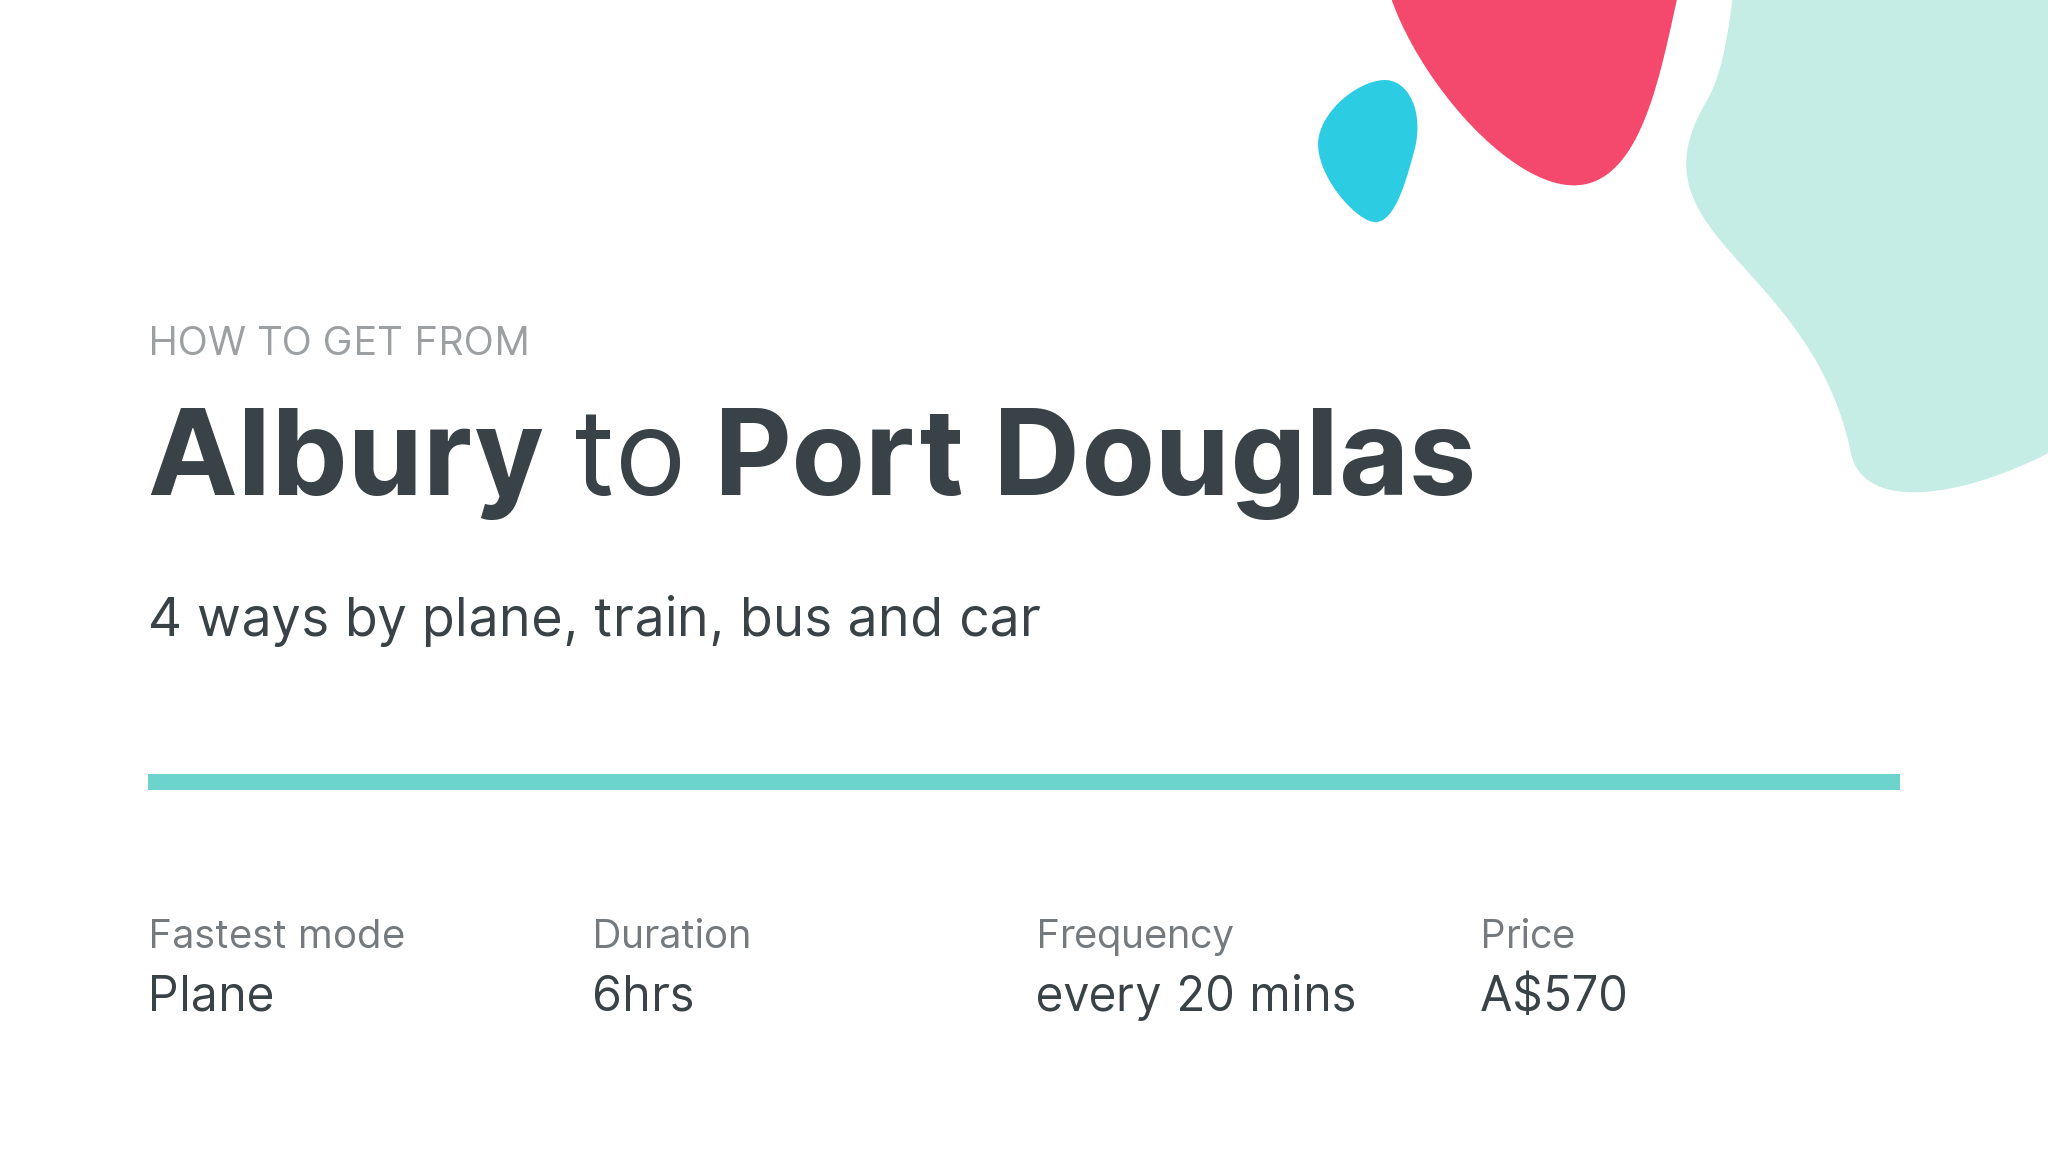 How do I get from Albury to Port Douglas